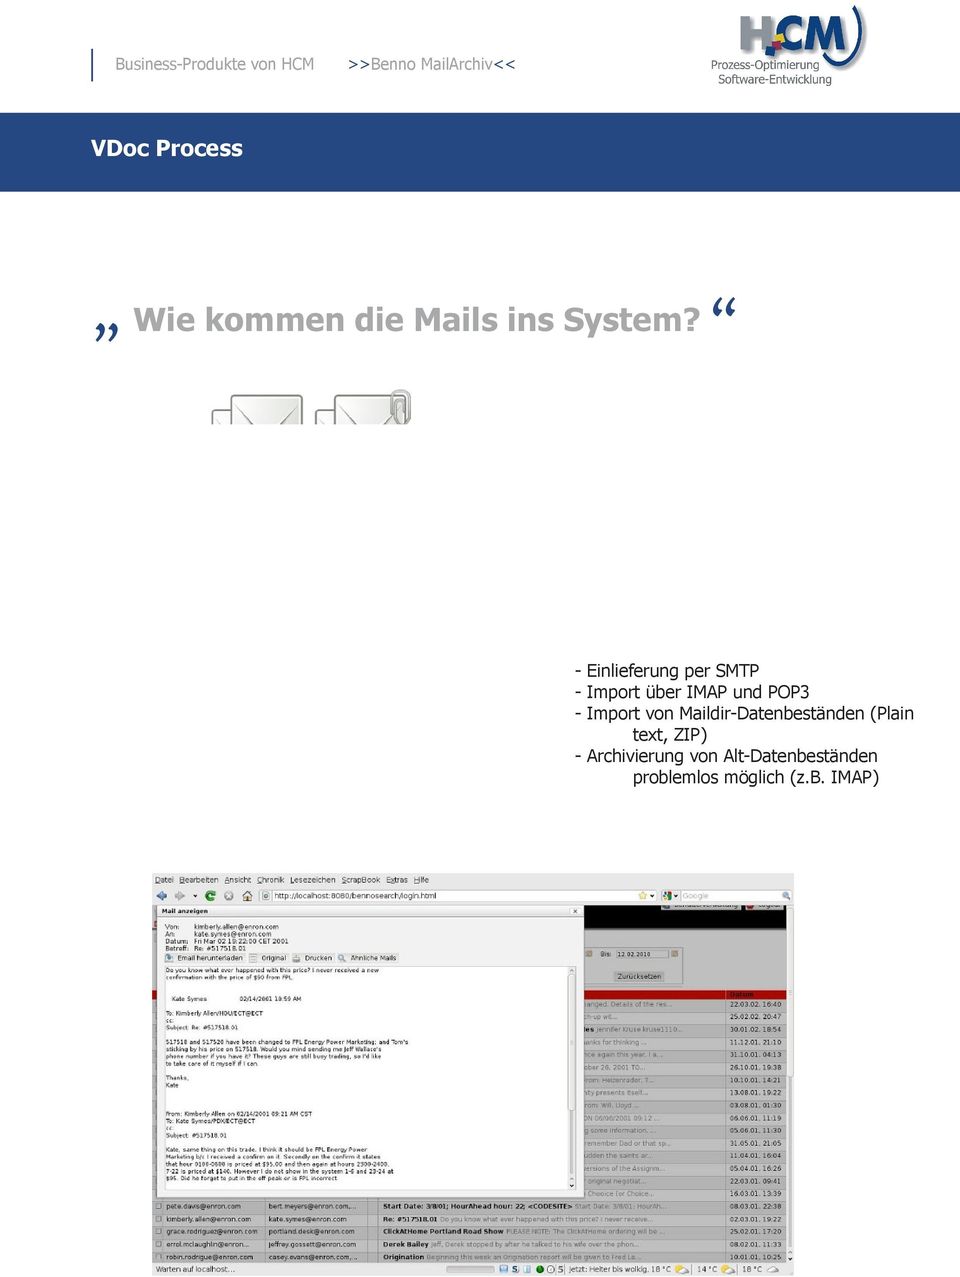 Import von Maildir-Datenbeständen (Plain text, ZIP) -